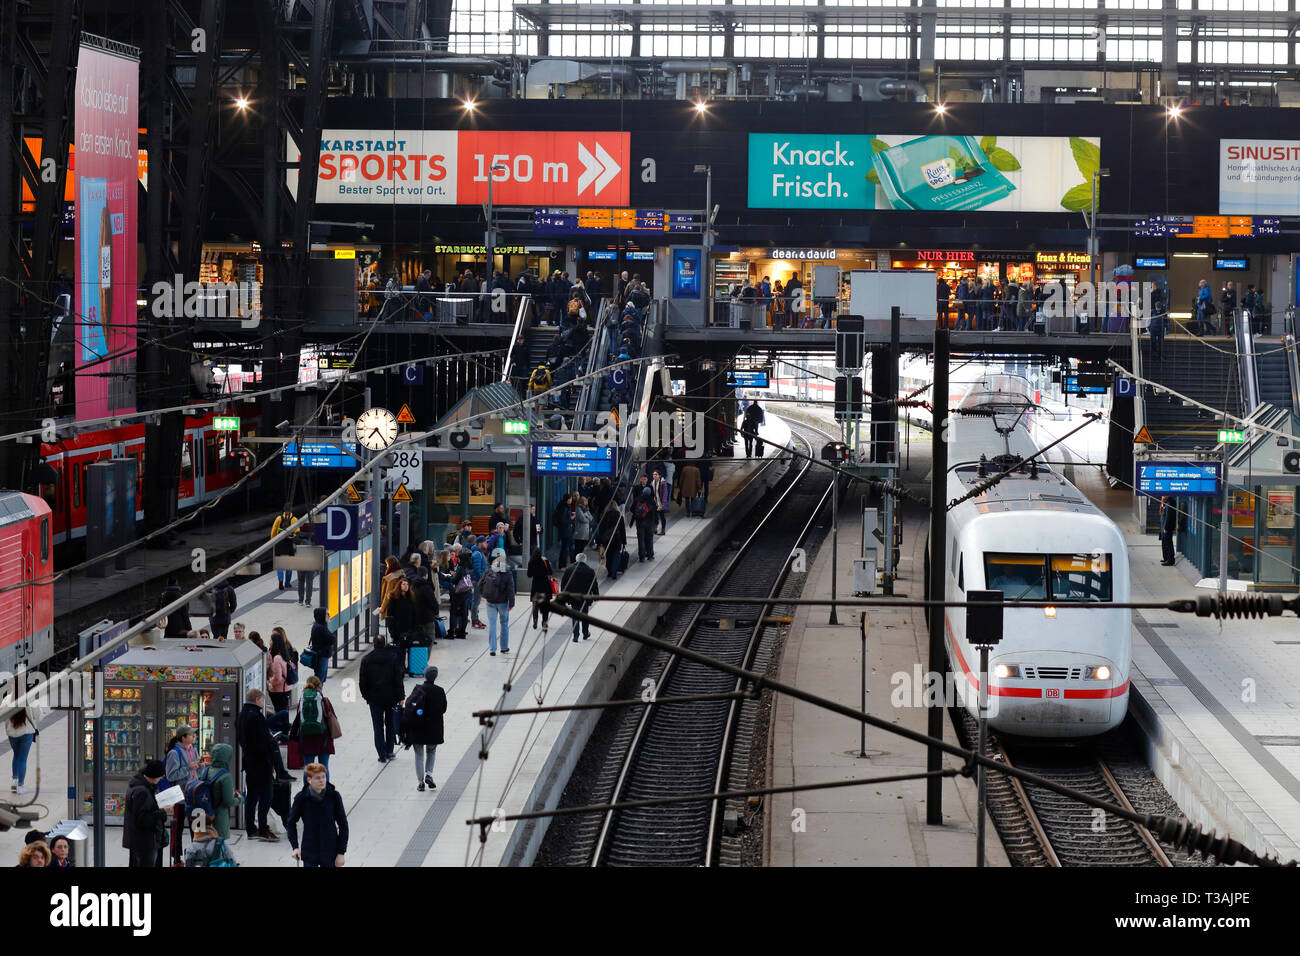 Una vista de una estación de tren concurrida y concurrida en Hamburg Hbf, Hamburgo, Alemania. Hamburgo Hauptbahnhof Foto de stock